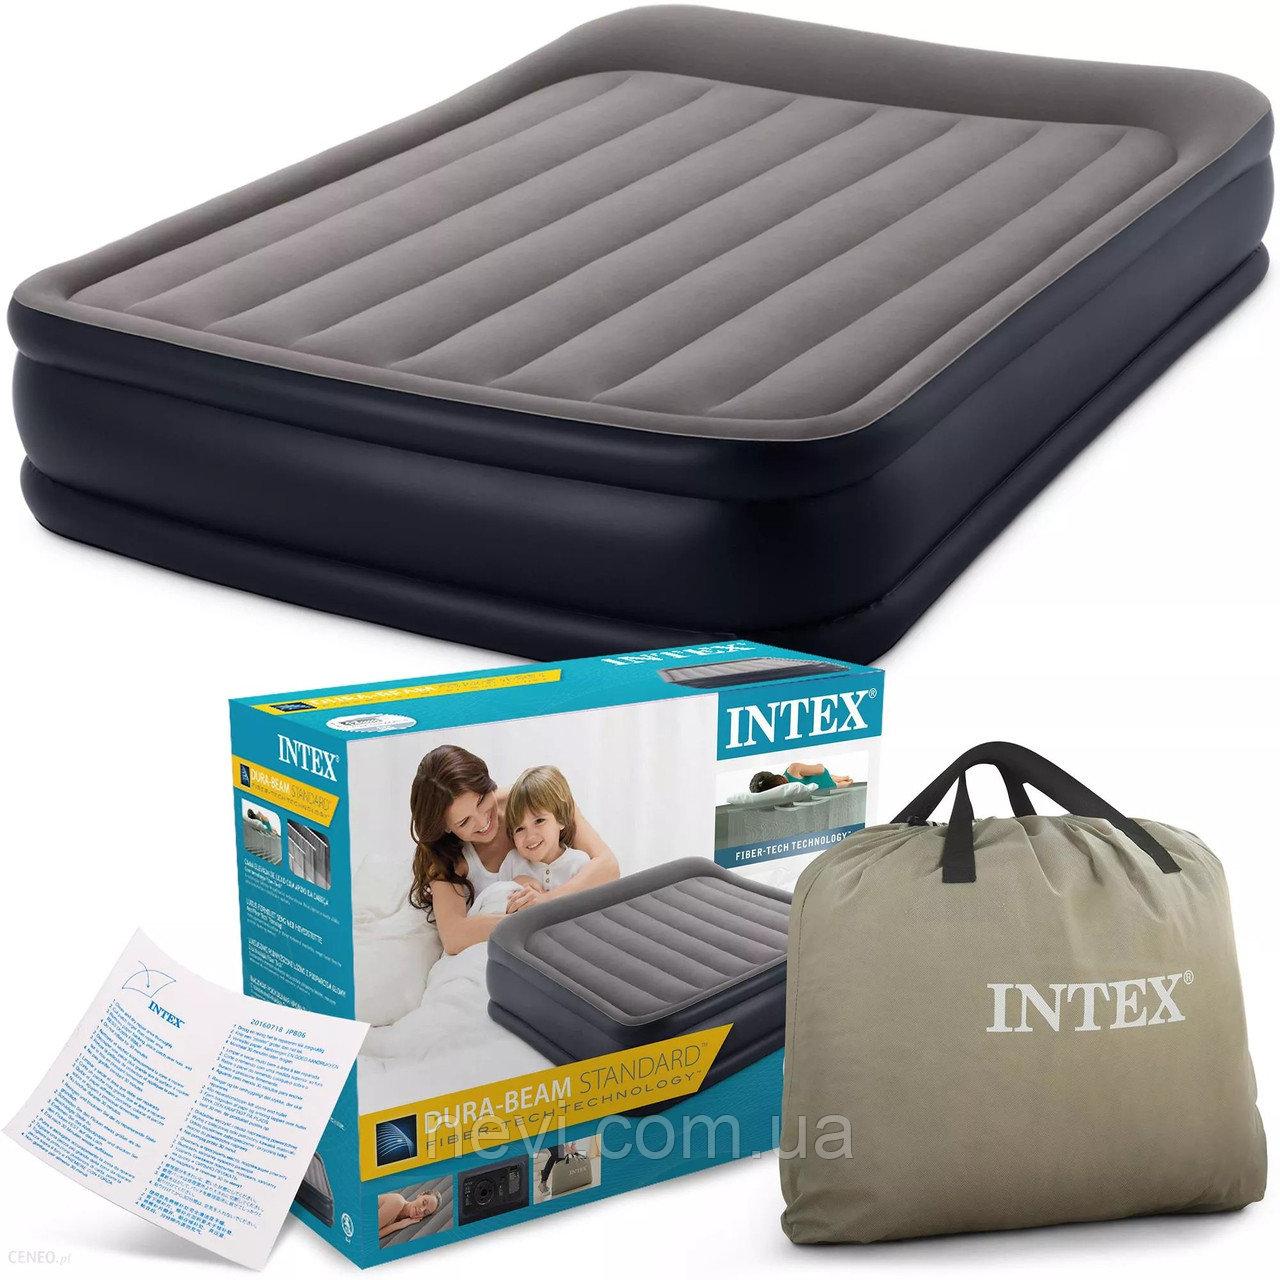 Надувная кровать Intex 152x203x42 Deluxe Pillow Rest Reised Bed, встроенный насос 220V, арт.  64136